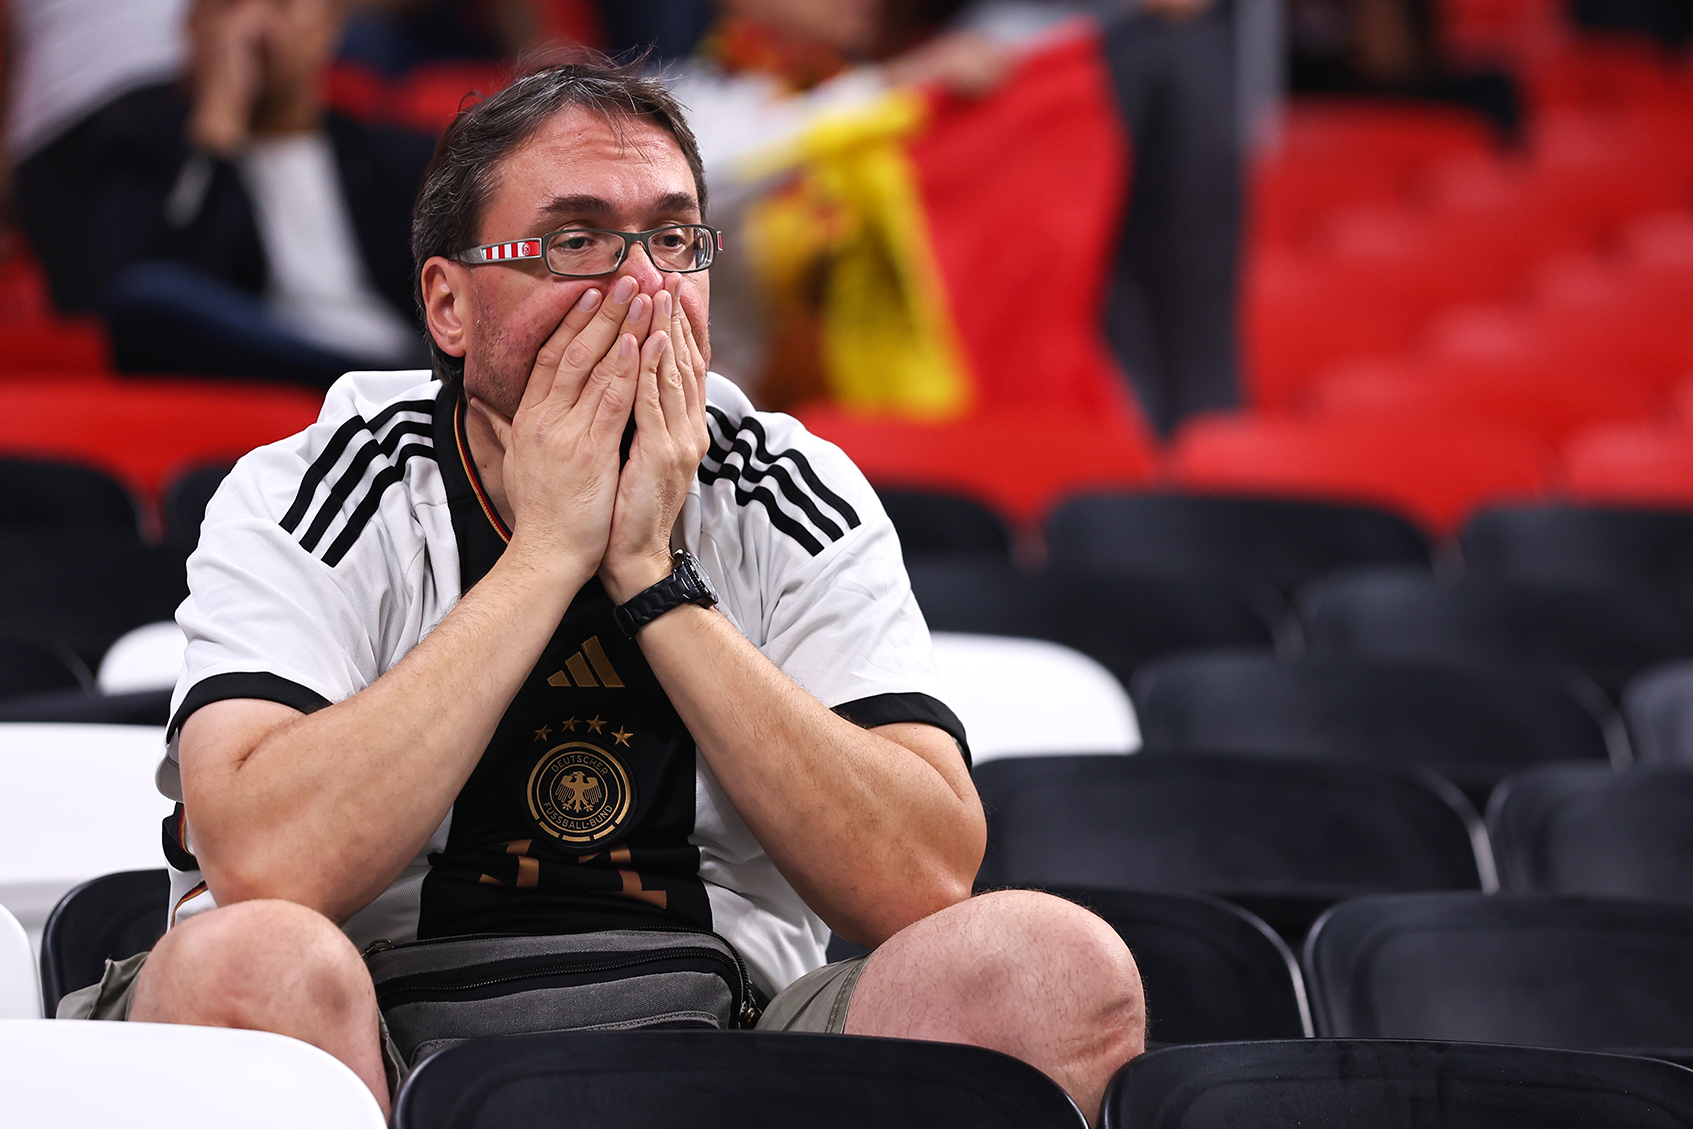 A dejected fan of Germany